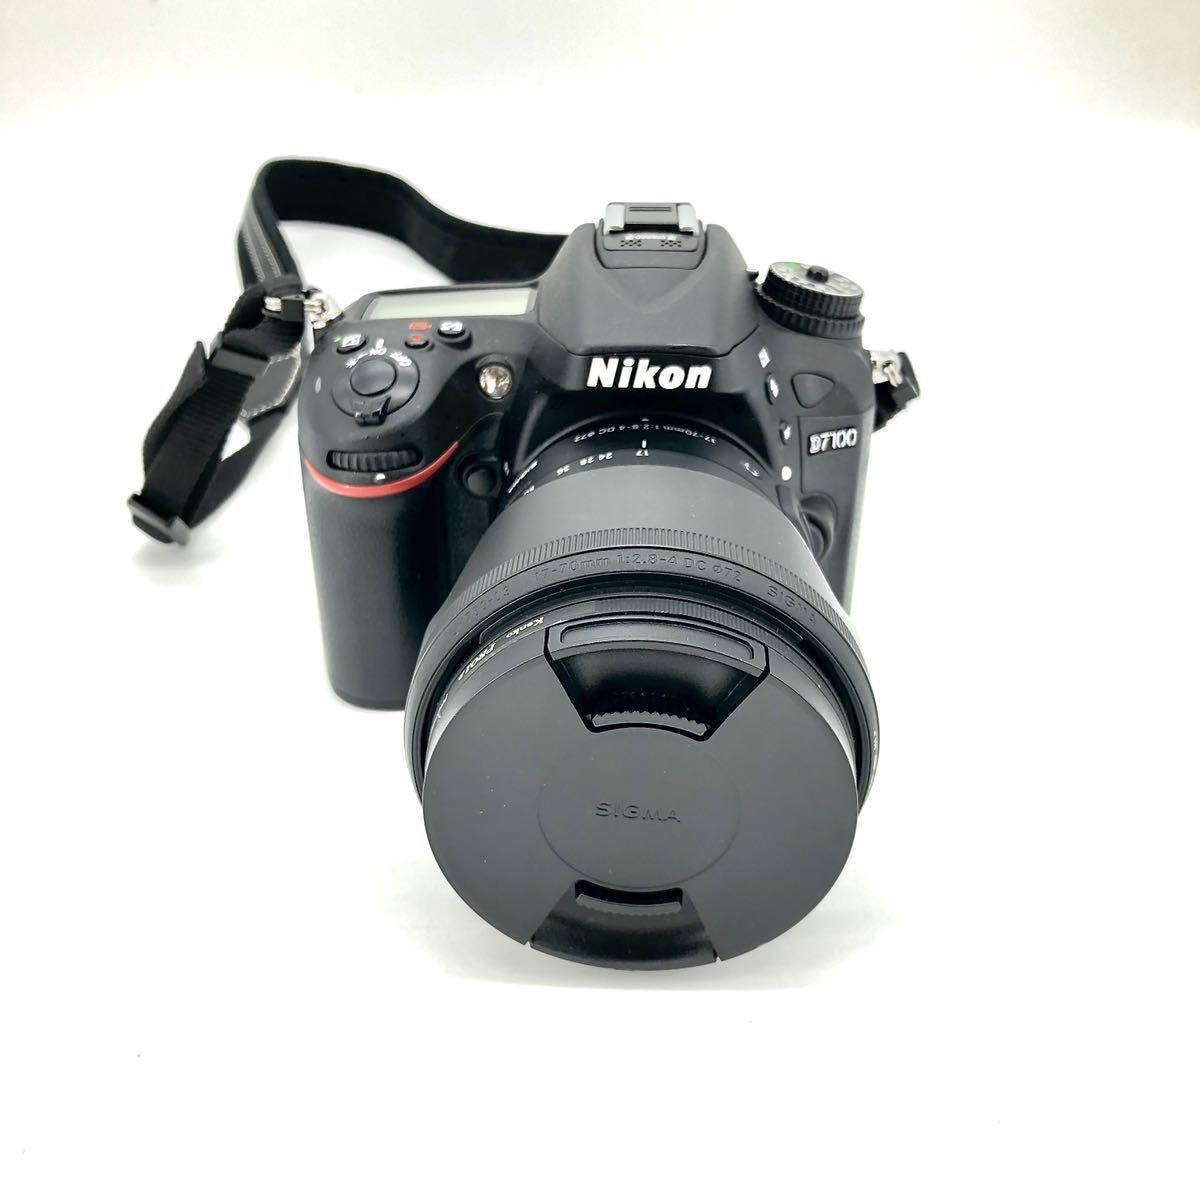 Nikon D7100 ニコン デジタル一眼レフカメラ-